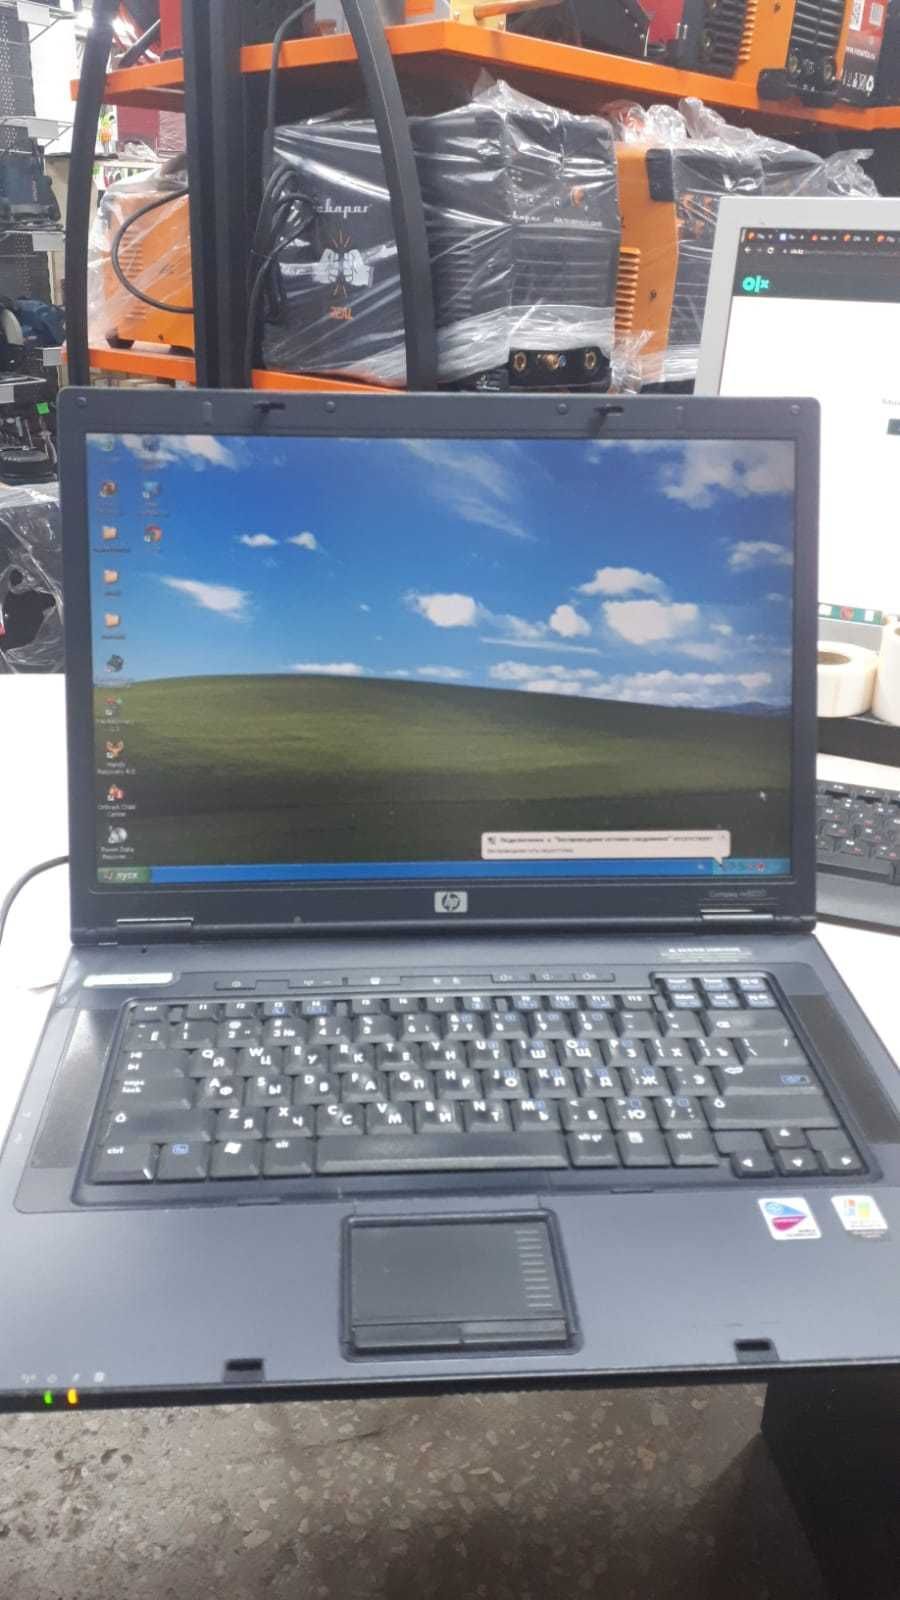 Продам ноутбук HP Compaq nx8220. В хорошем состоянии.